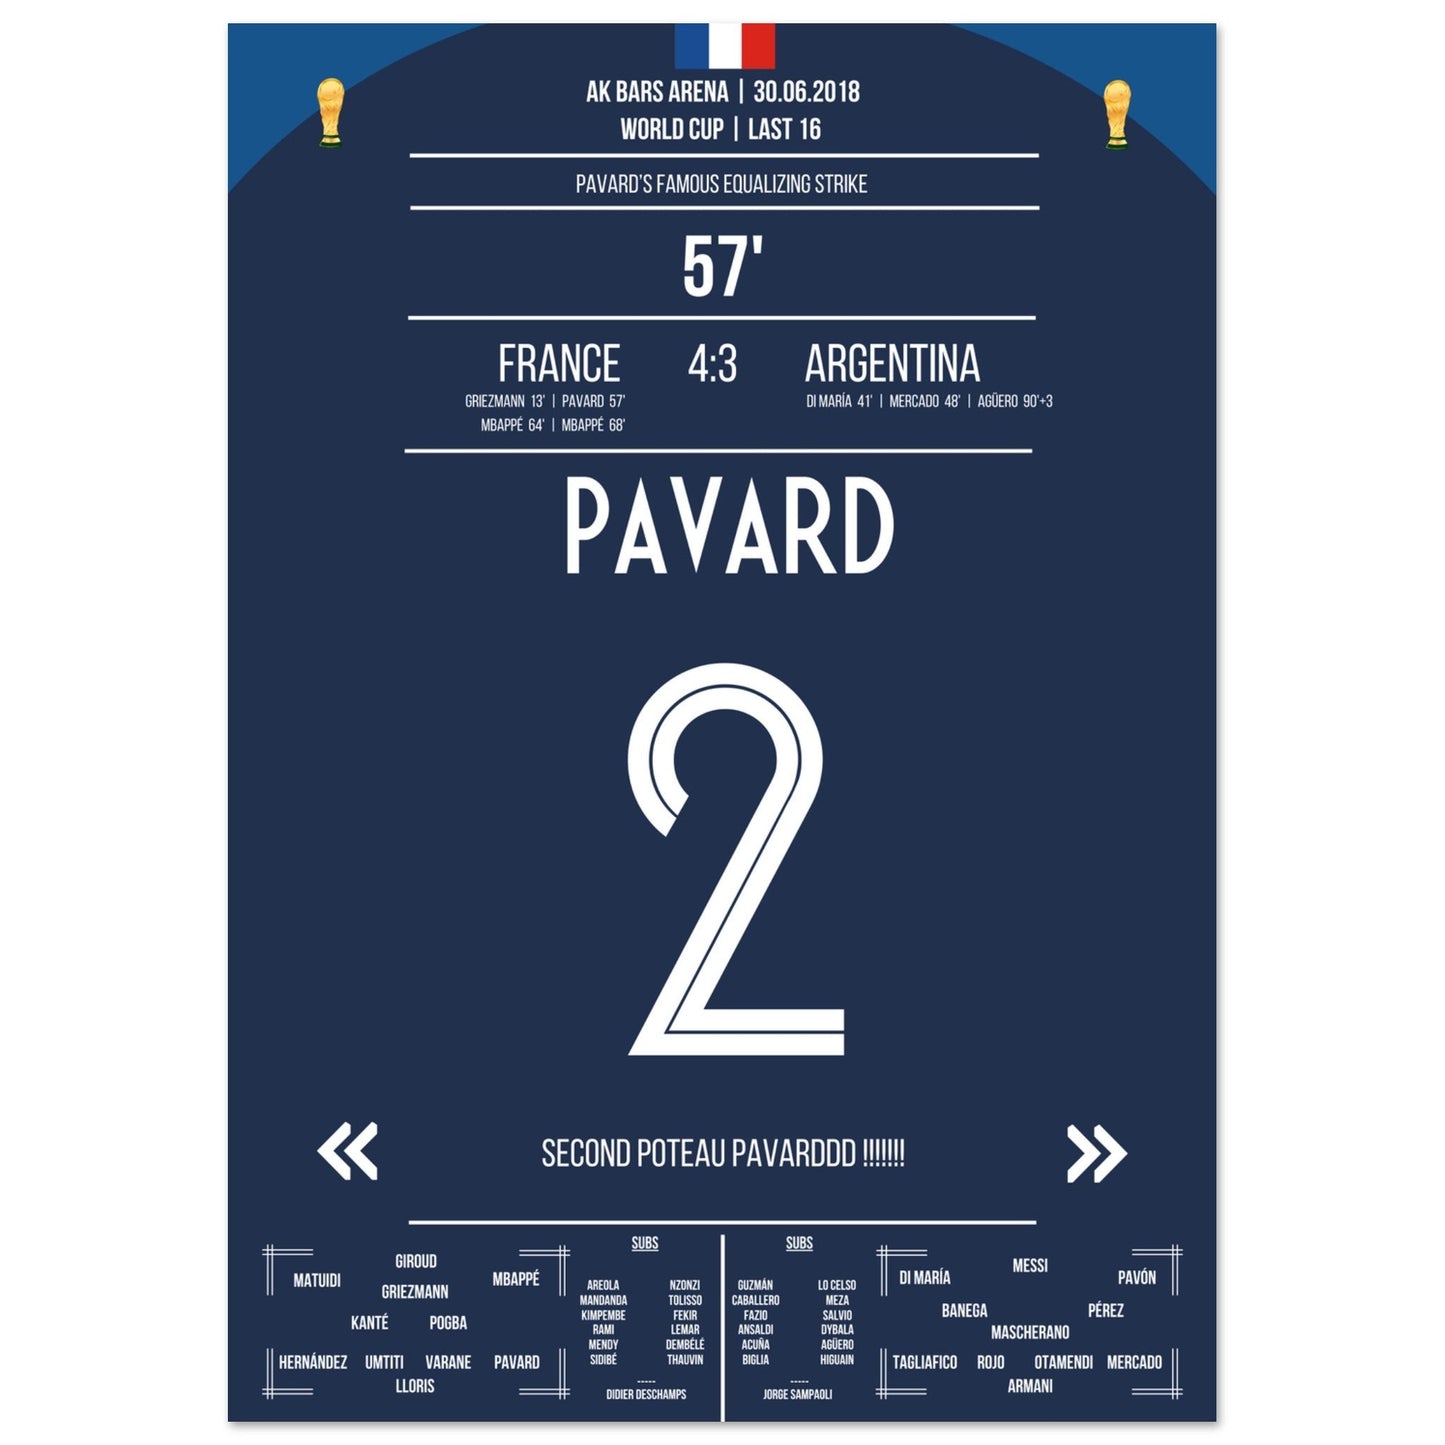 Pavard's Traumtor gegen Argentinien im WM Achtelfinale 2018 